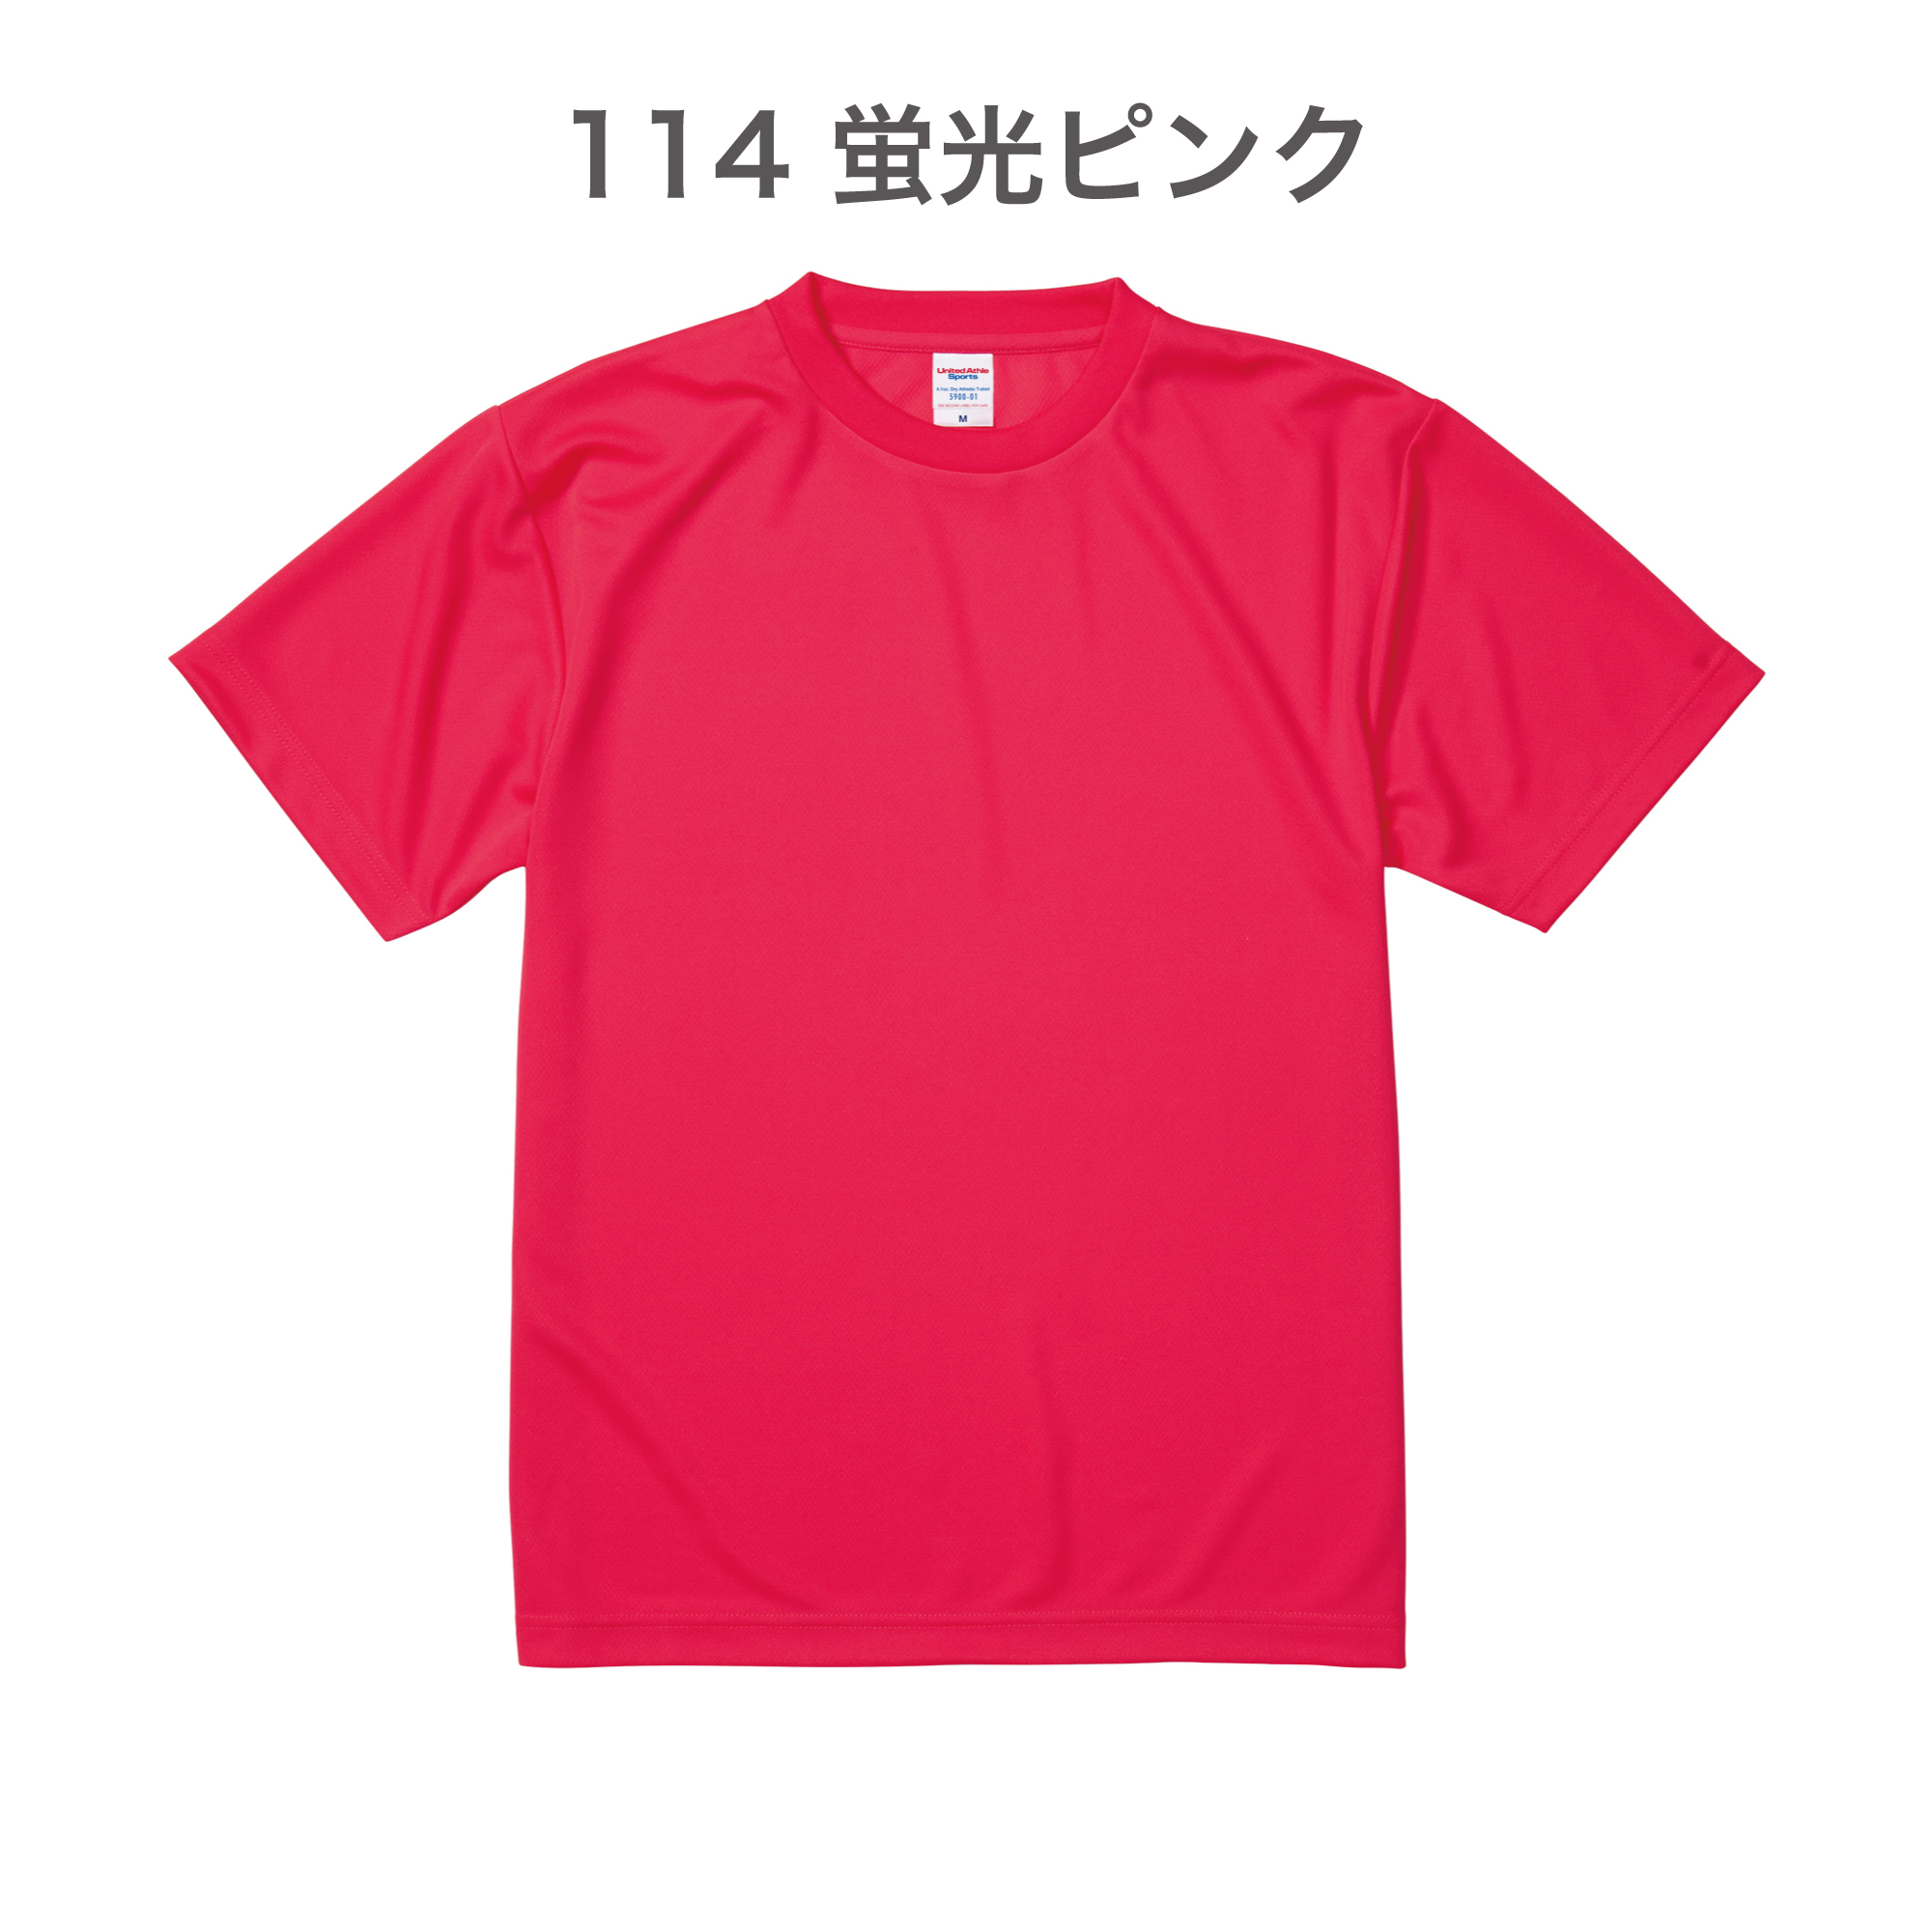 114-蛍光ピンク